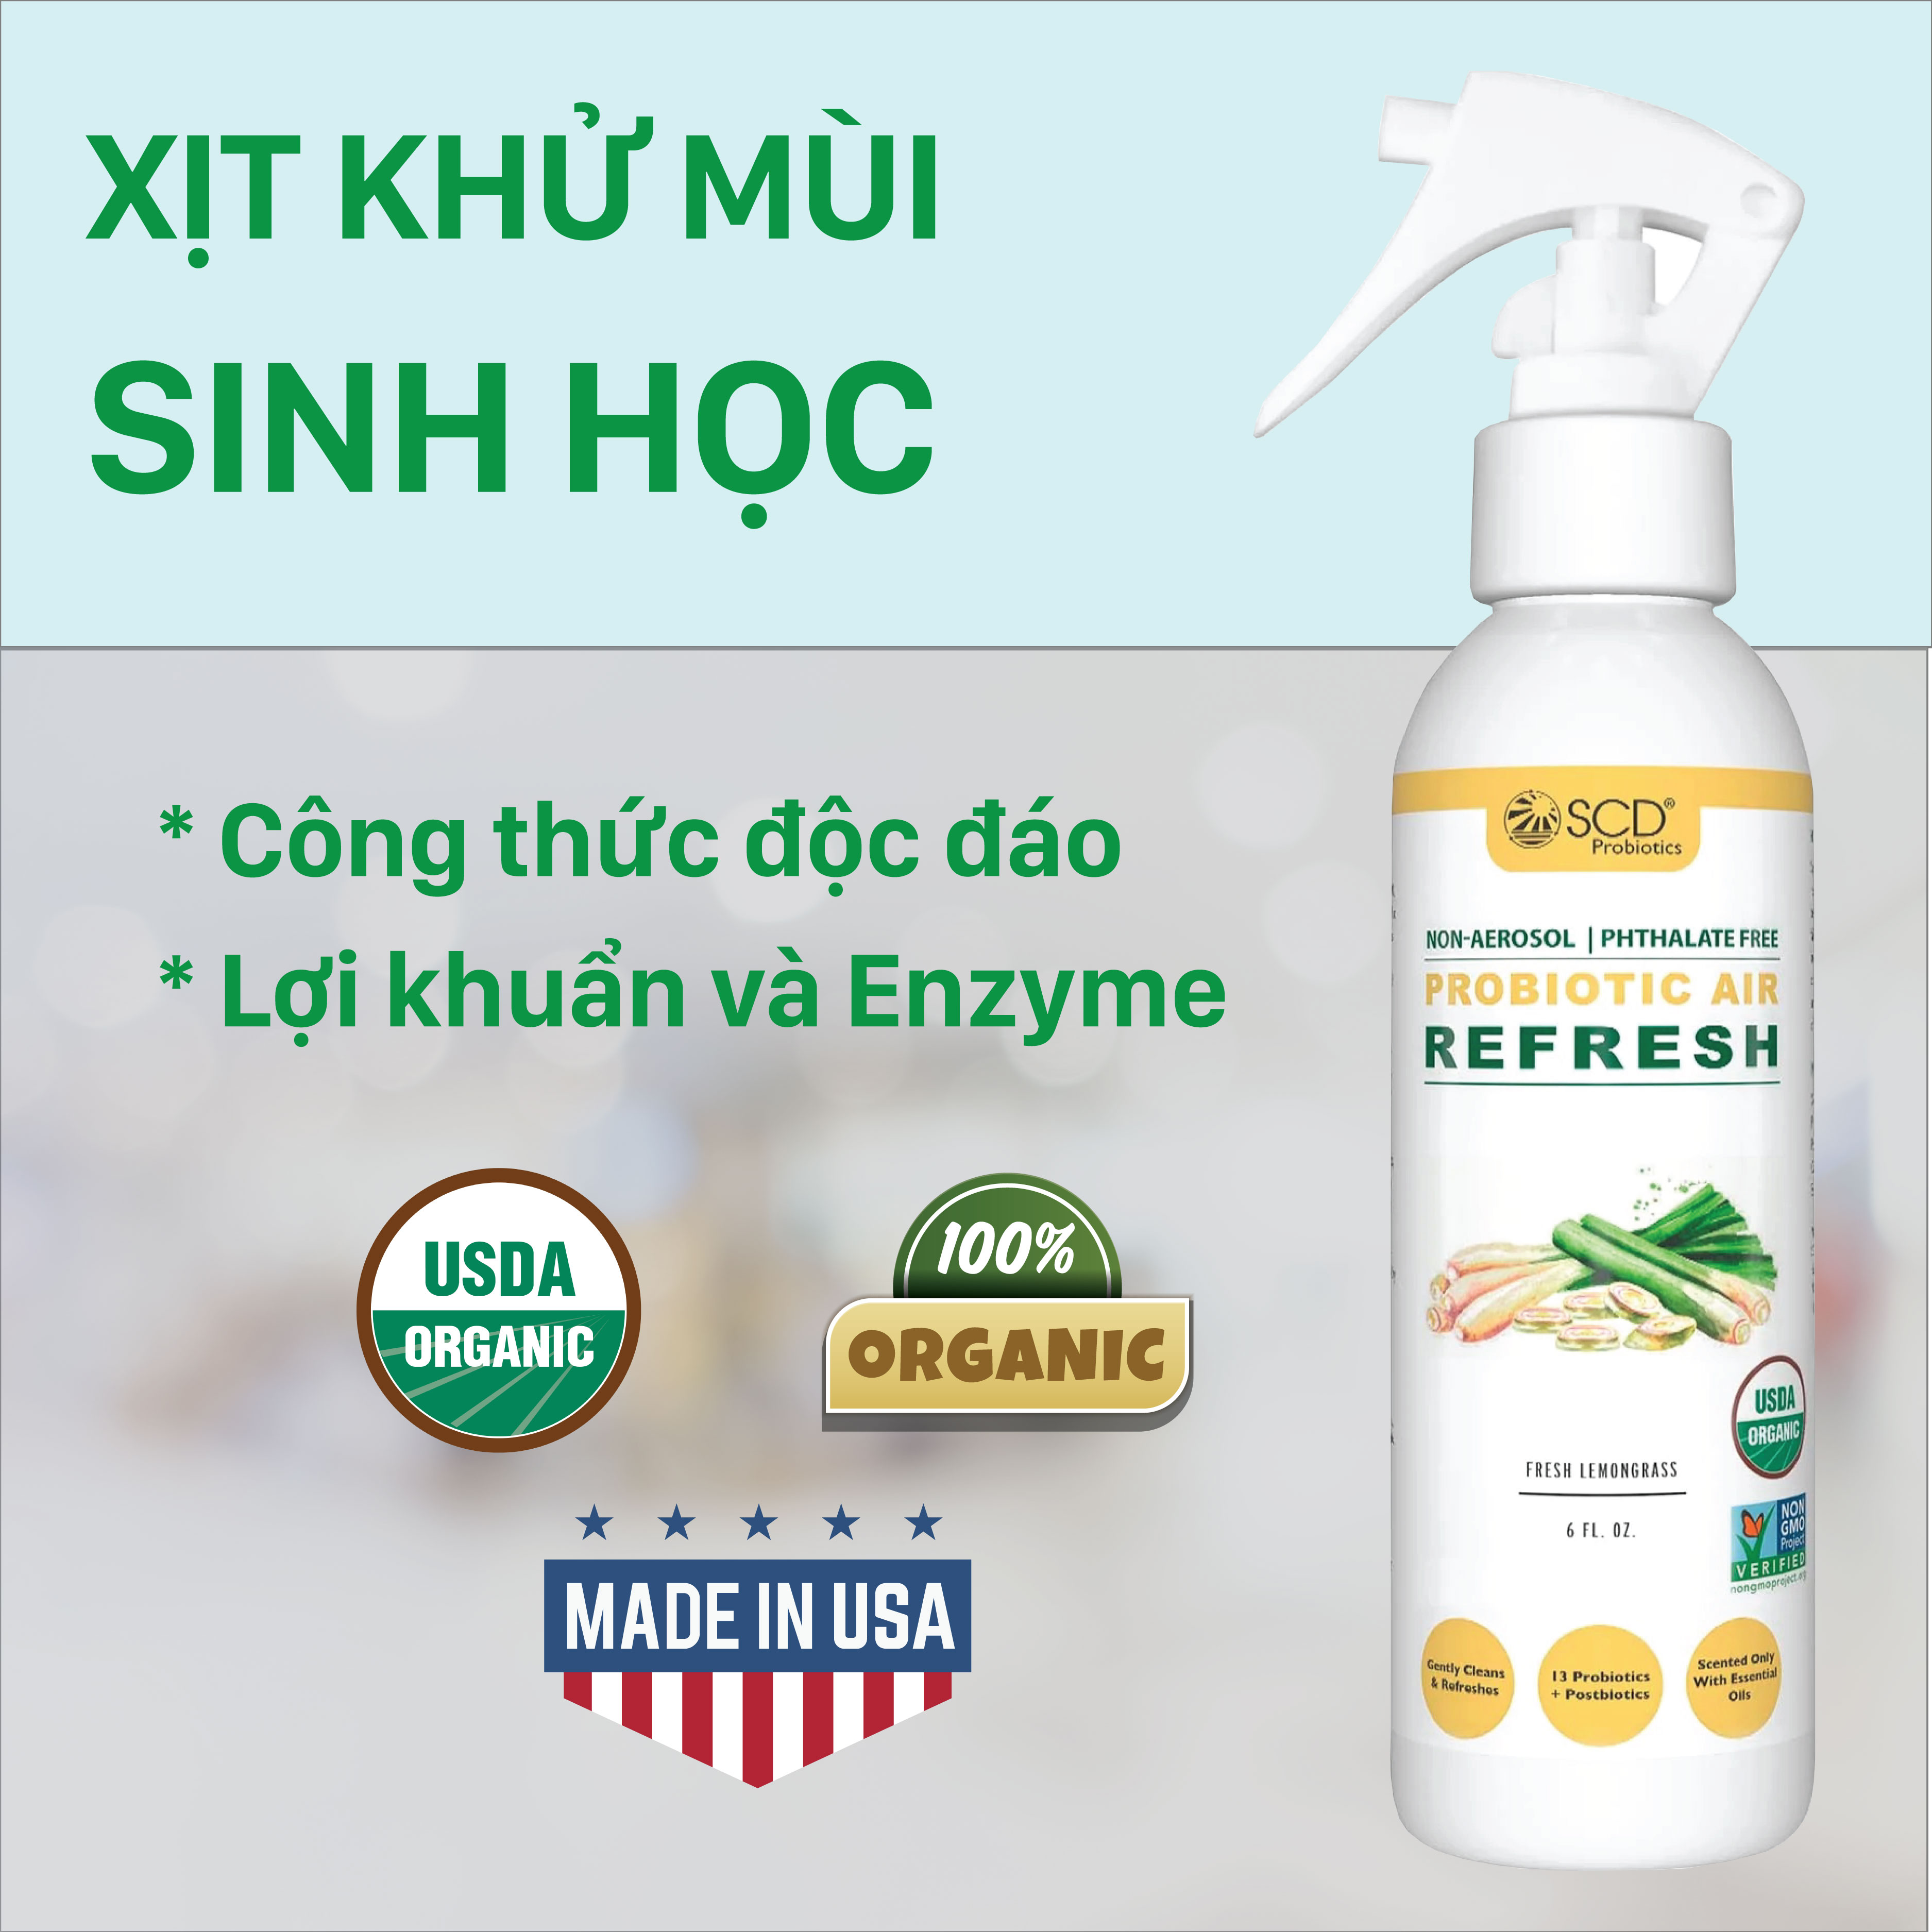 Chai khử mùi Sinh học - Hương Sả - 177ml - Probiotics Air Refresh (SCD Probiotics, USA)